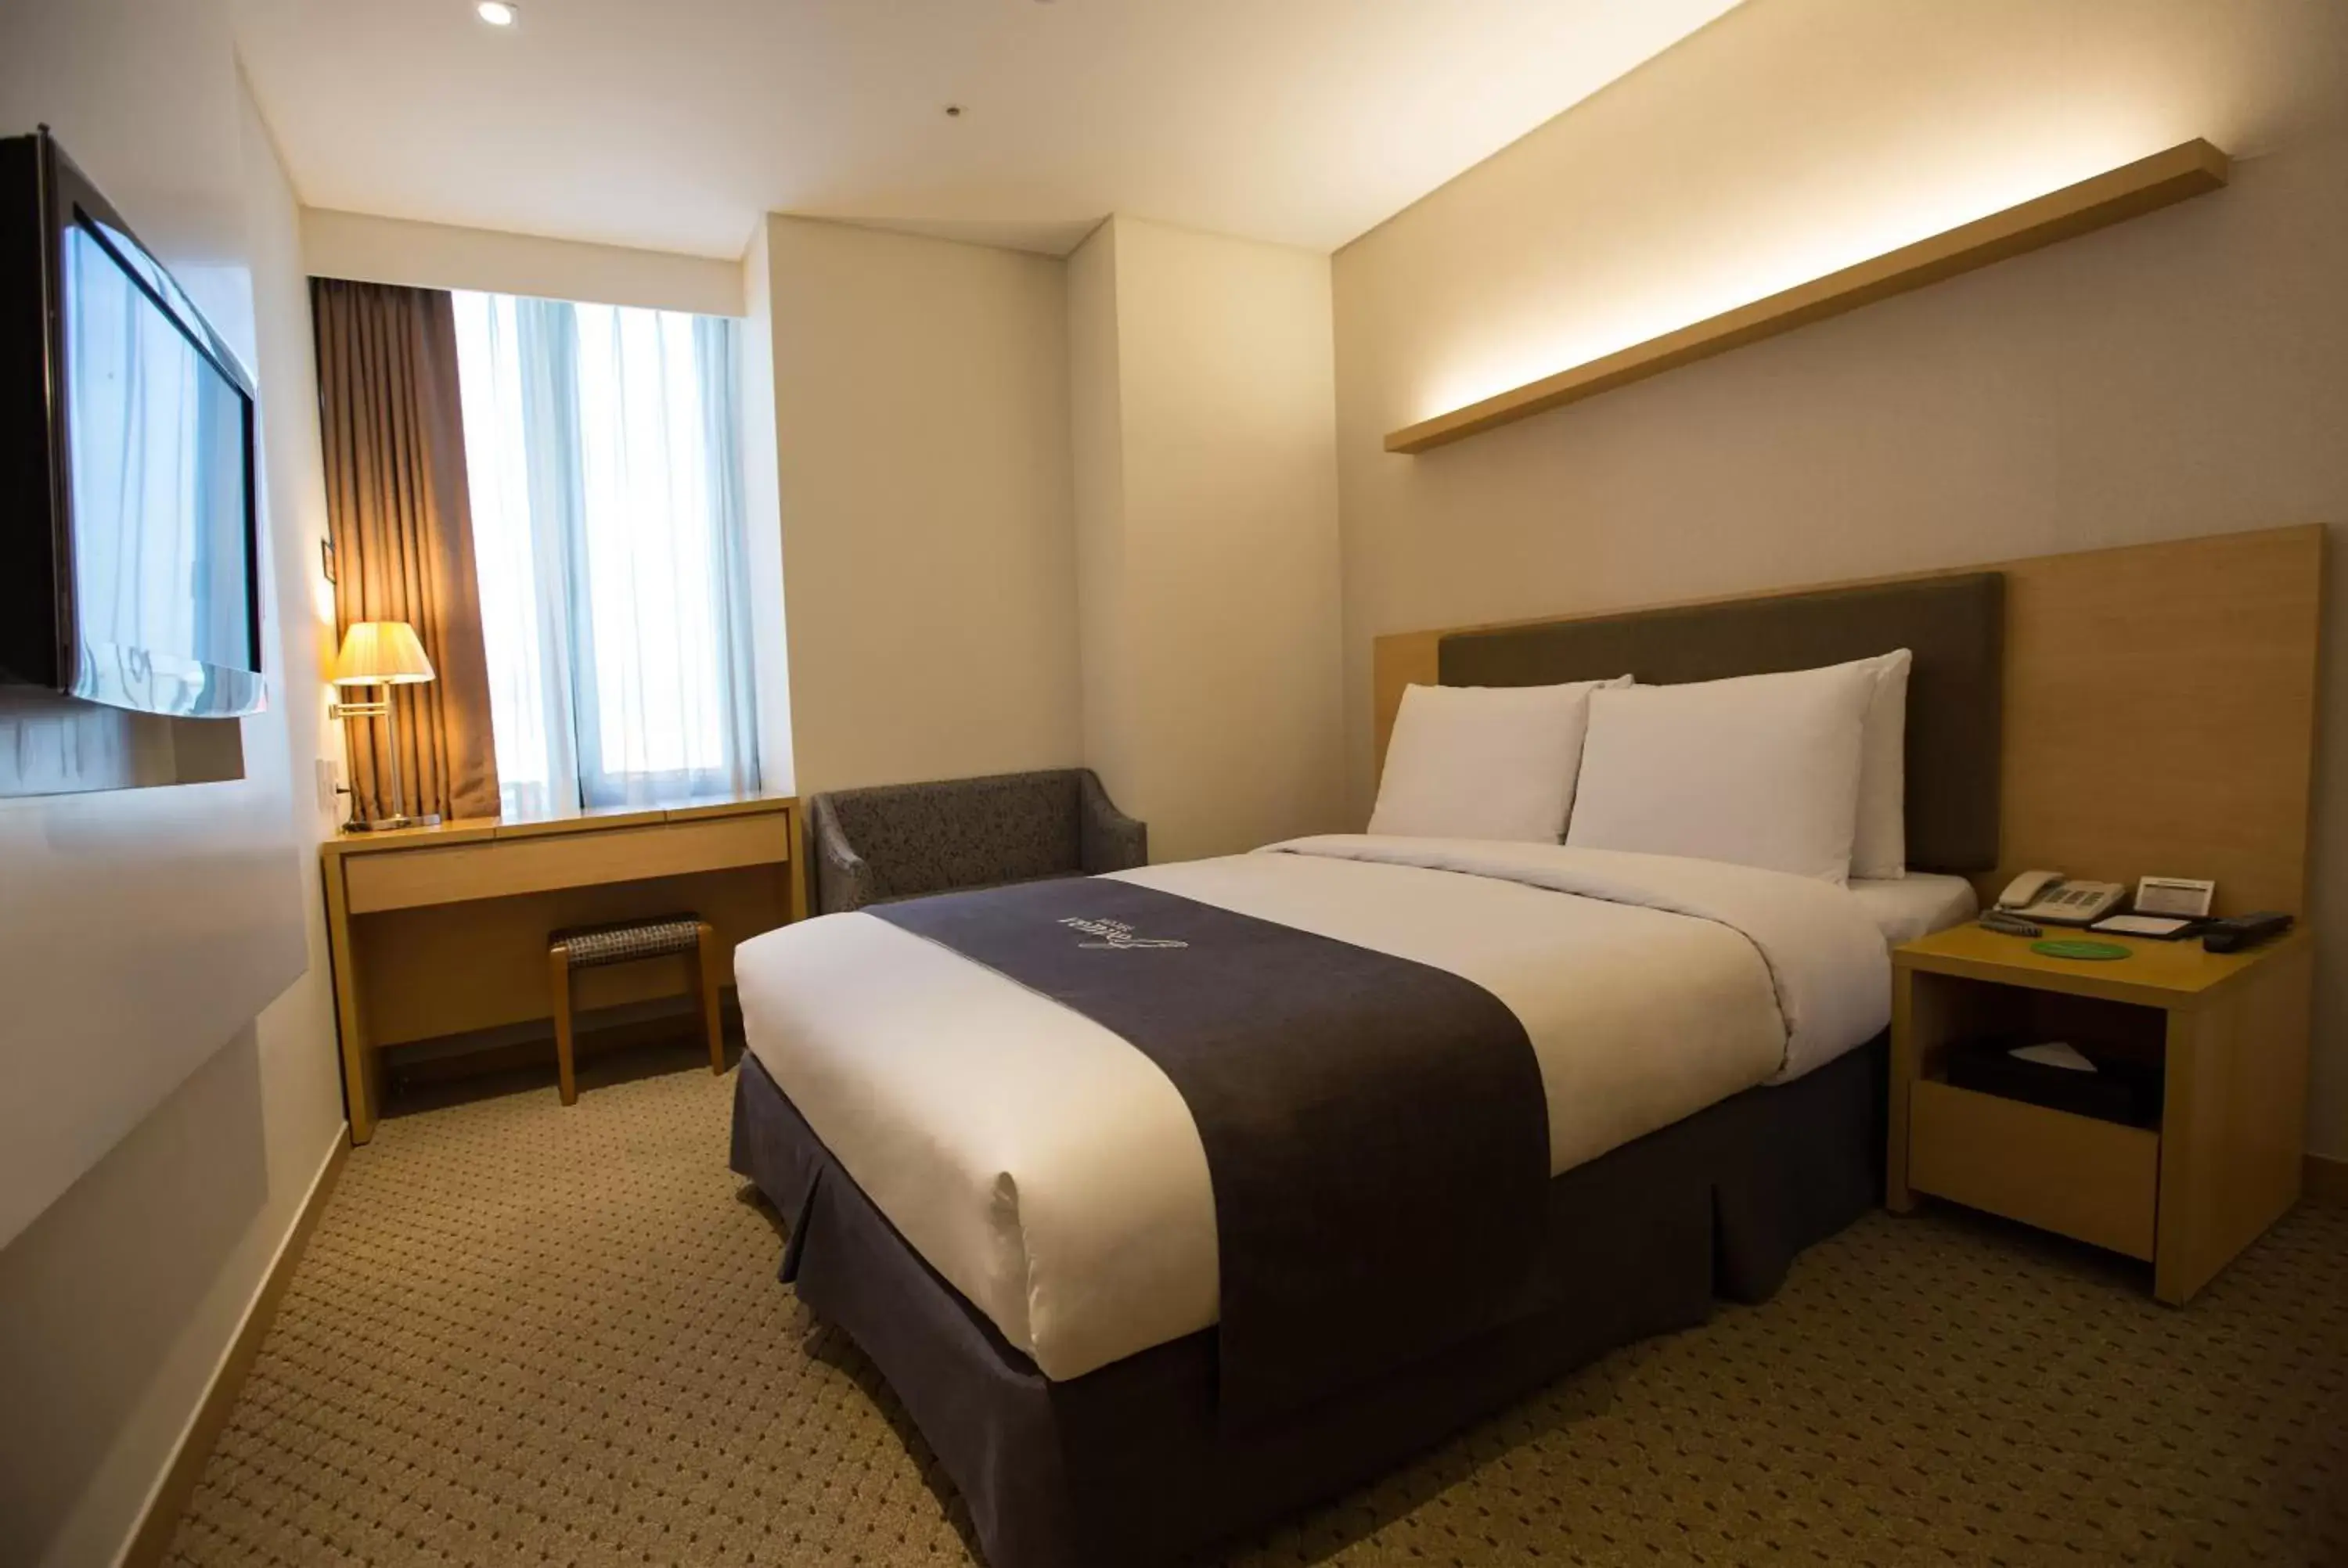 Bedroom in Hotel Venue-G Seoul